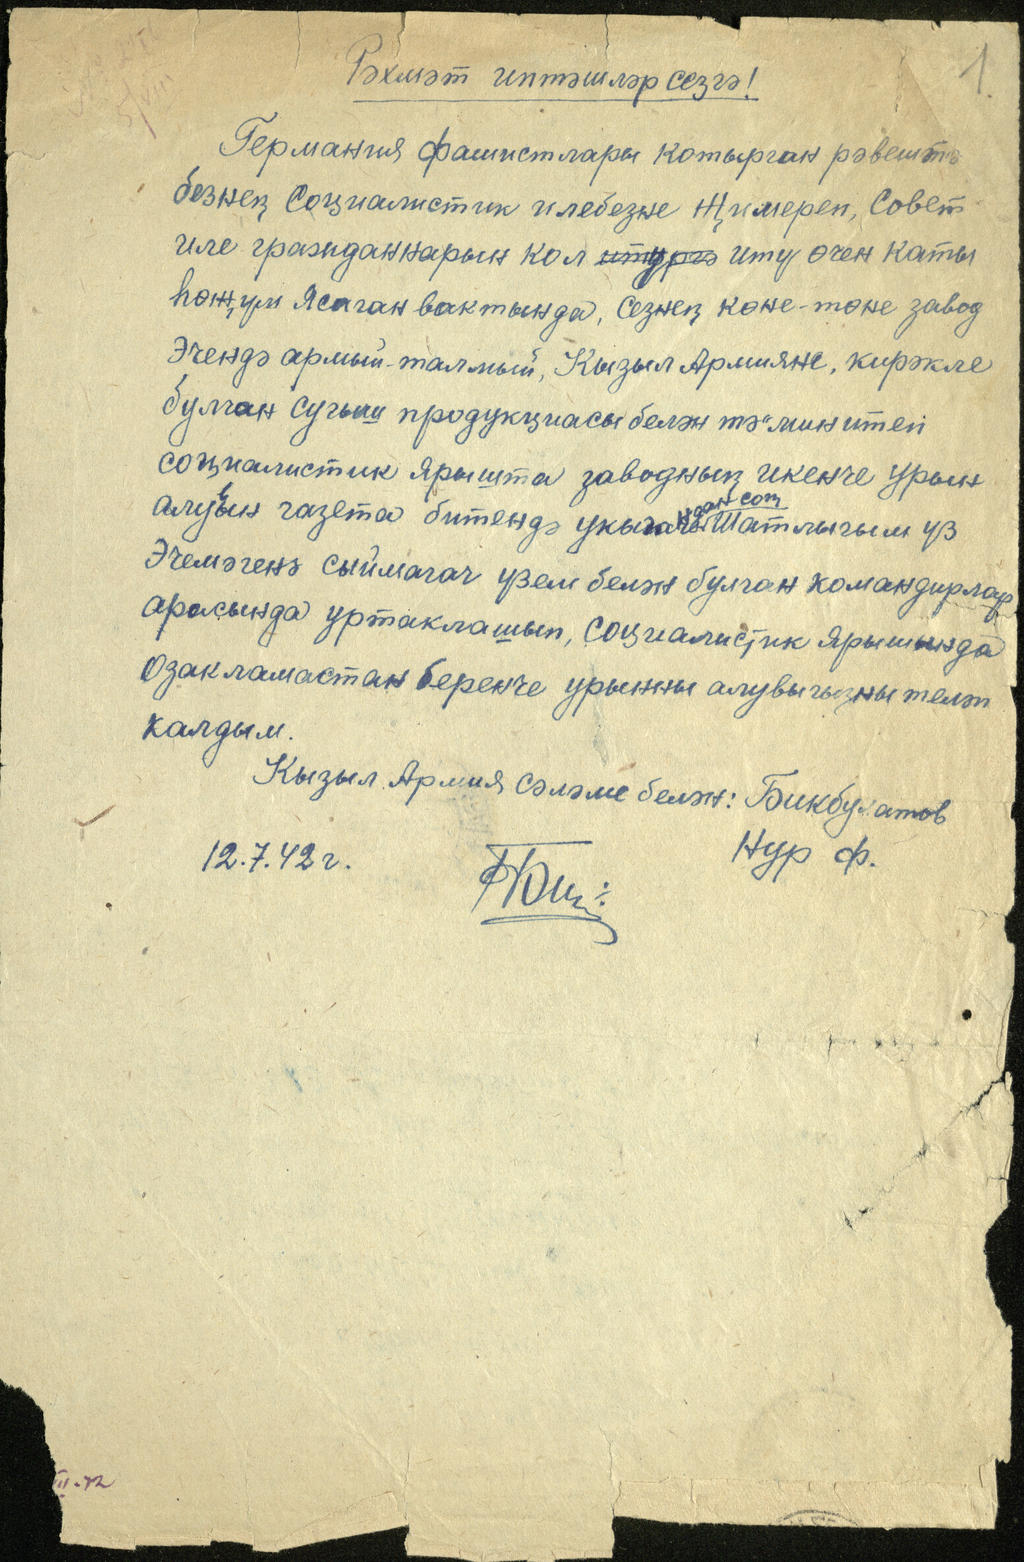 Что заставило сталина написать письмо ленину